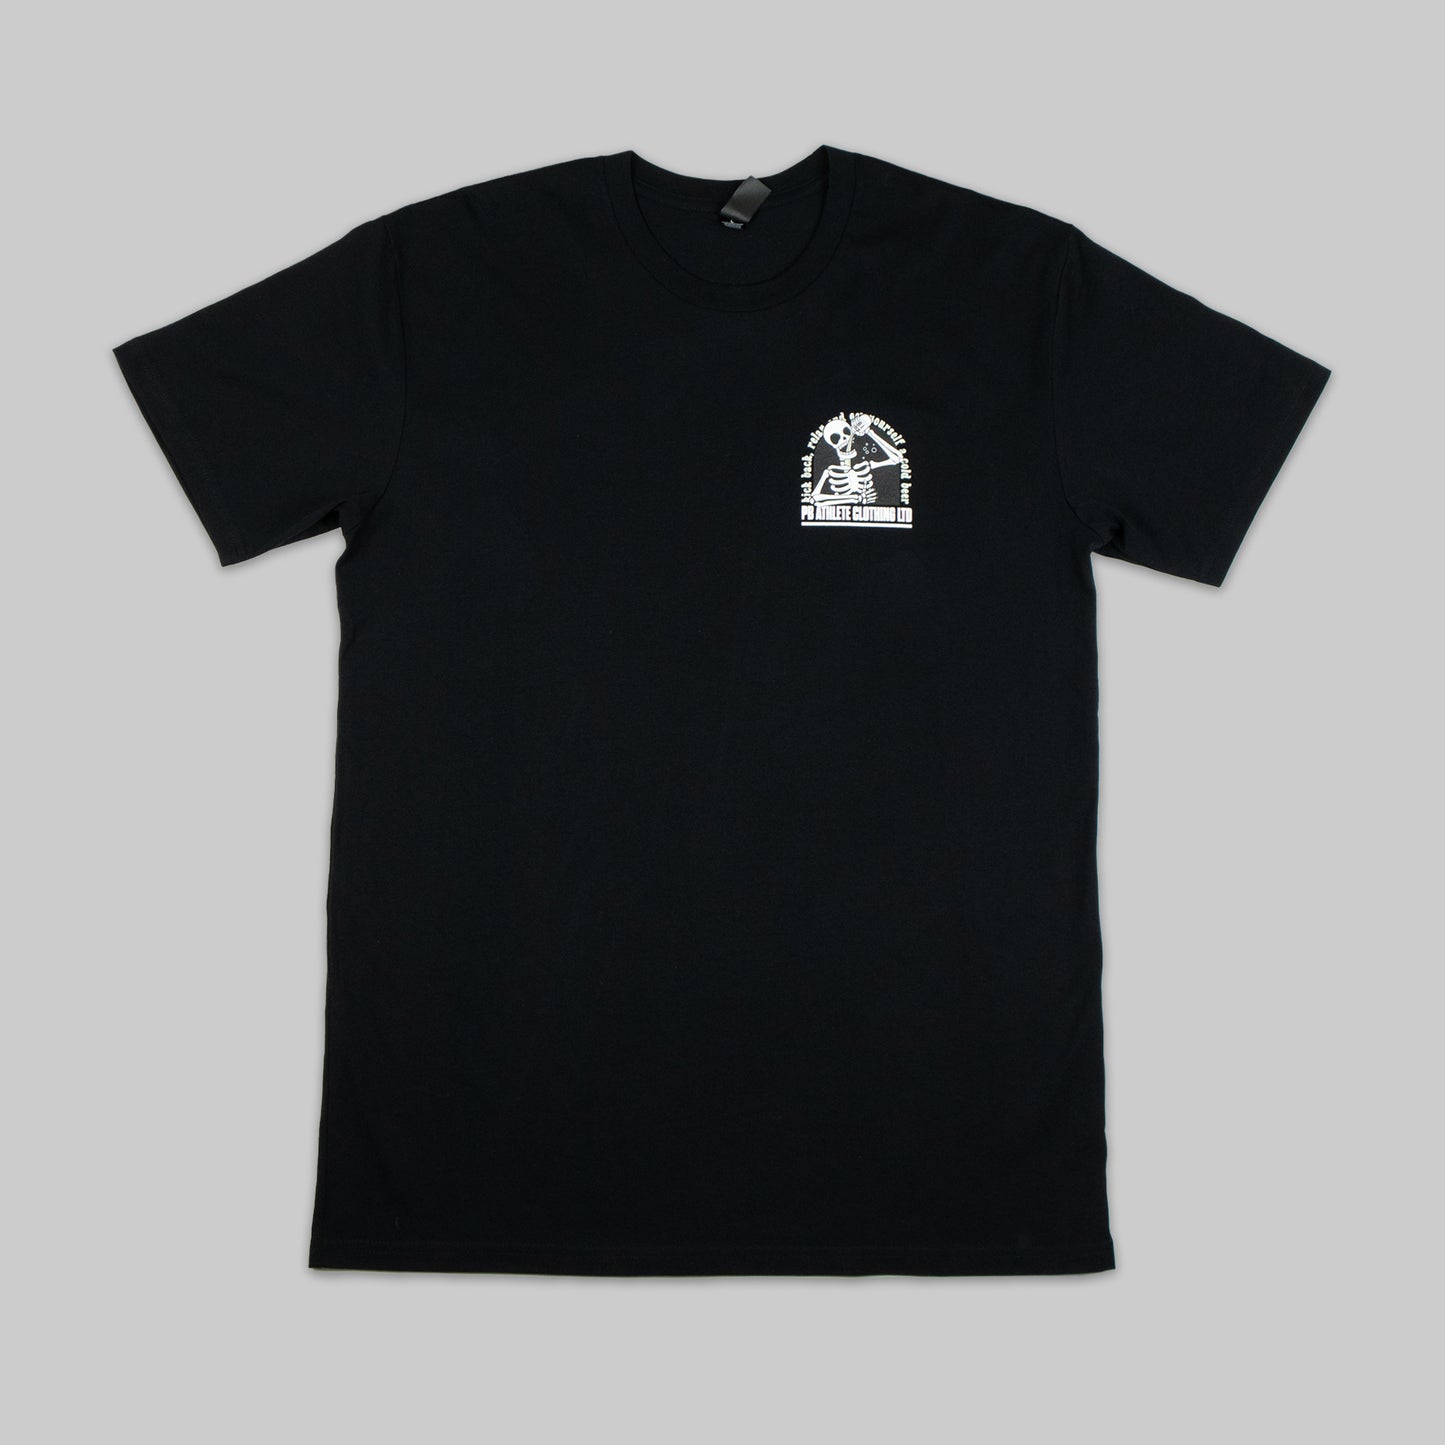 Kickback T-Shirt - Black